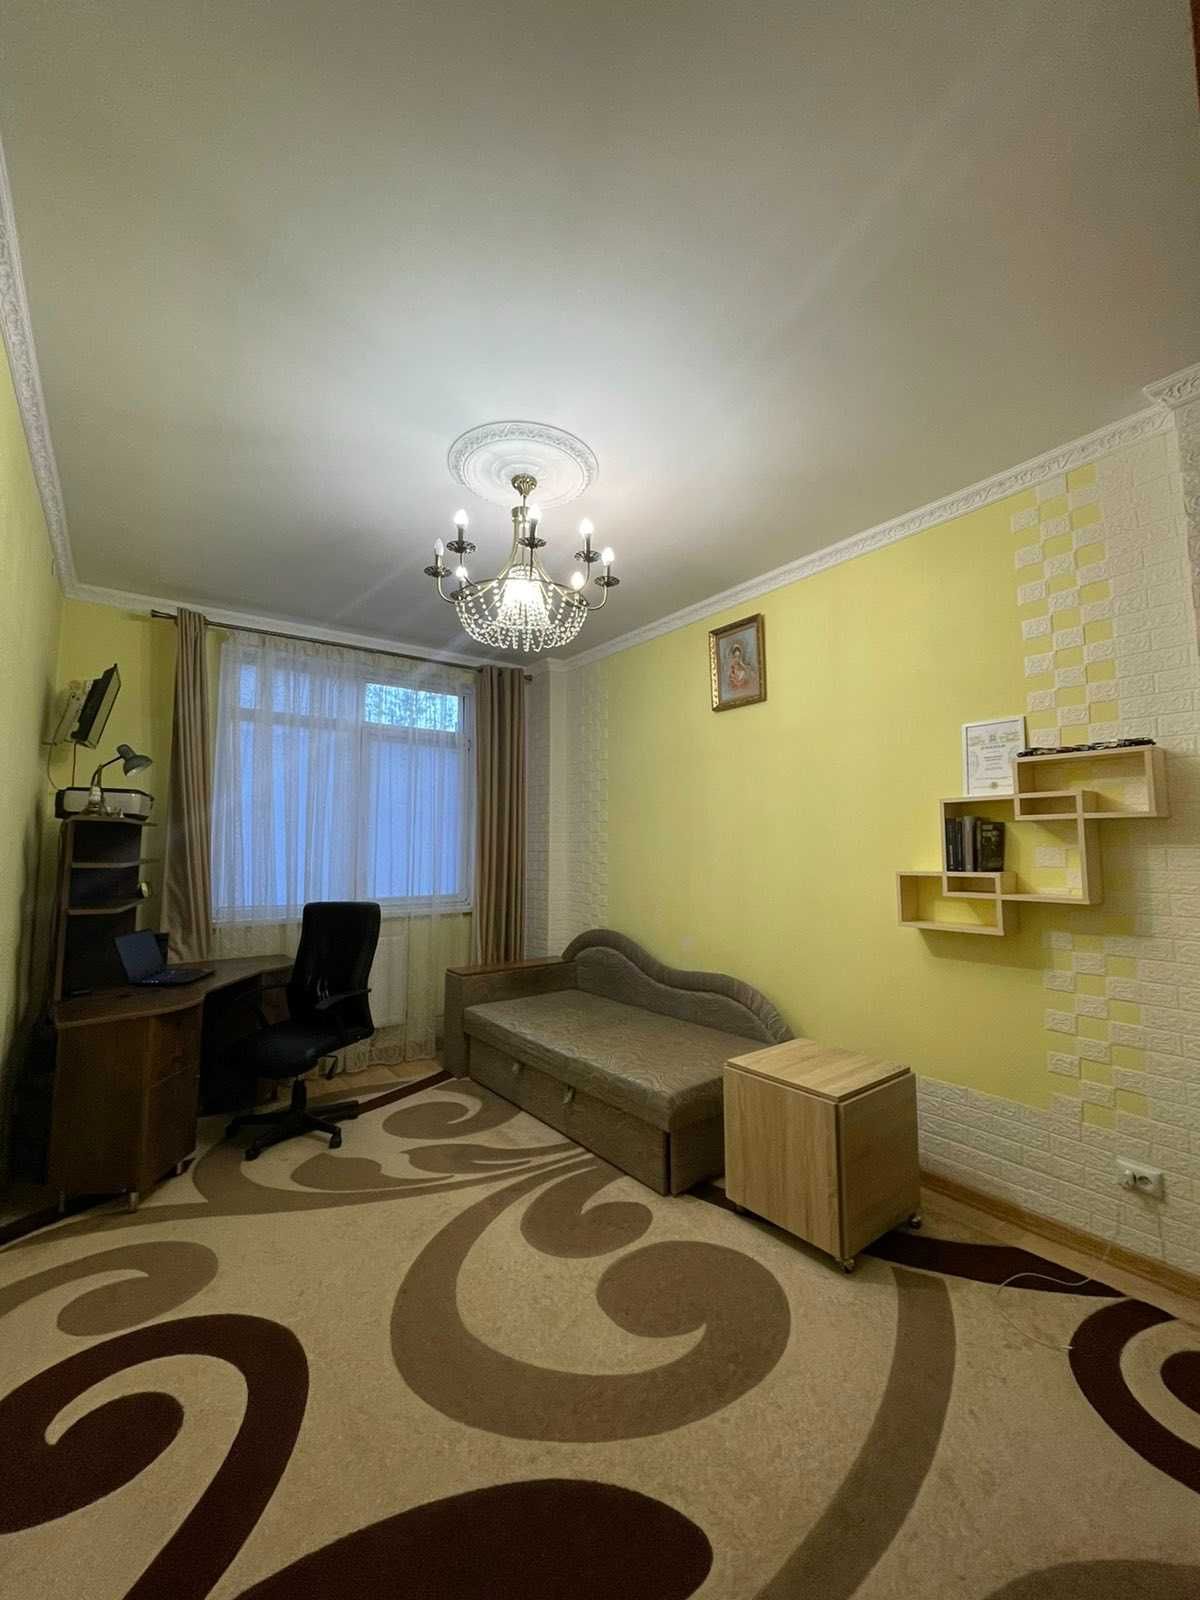 Продаж 2-кім квартира євроремонт 69/37/12м² вул Ромашкова 124999$ ТОРГ